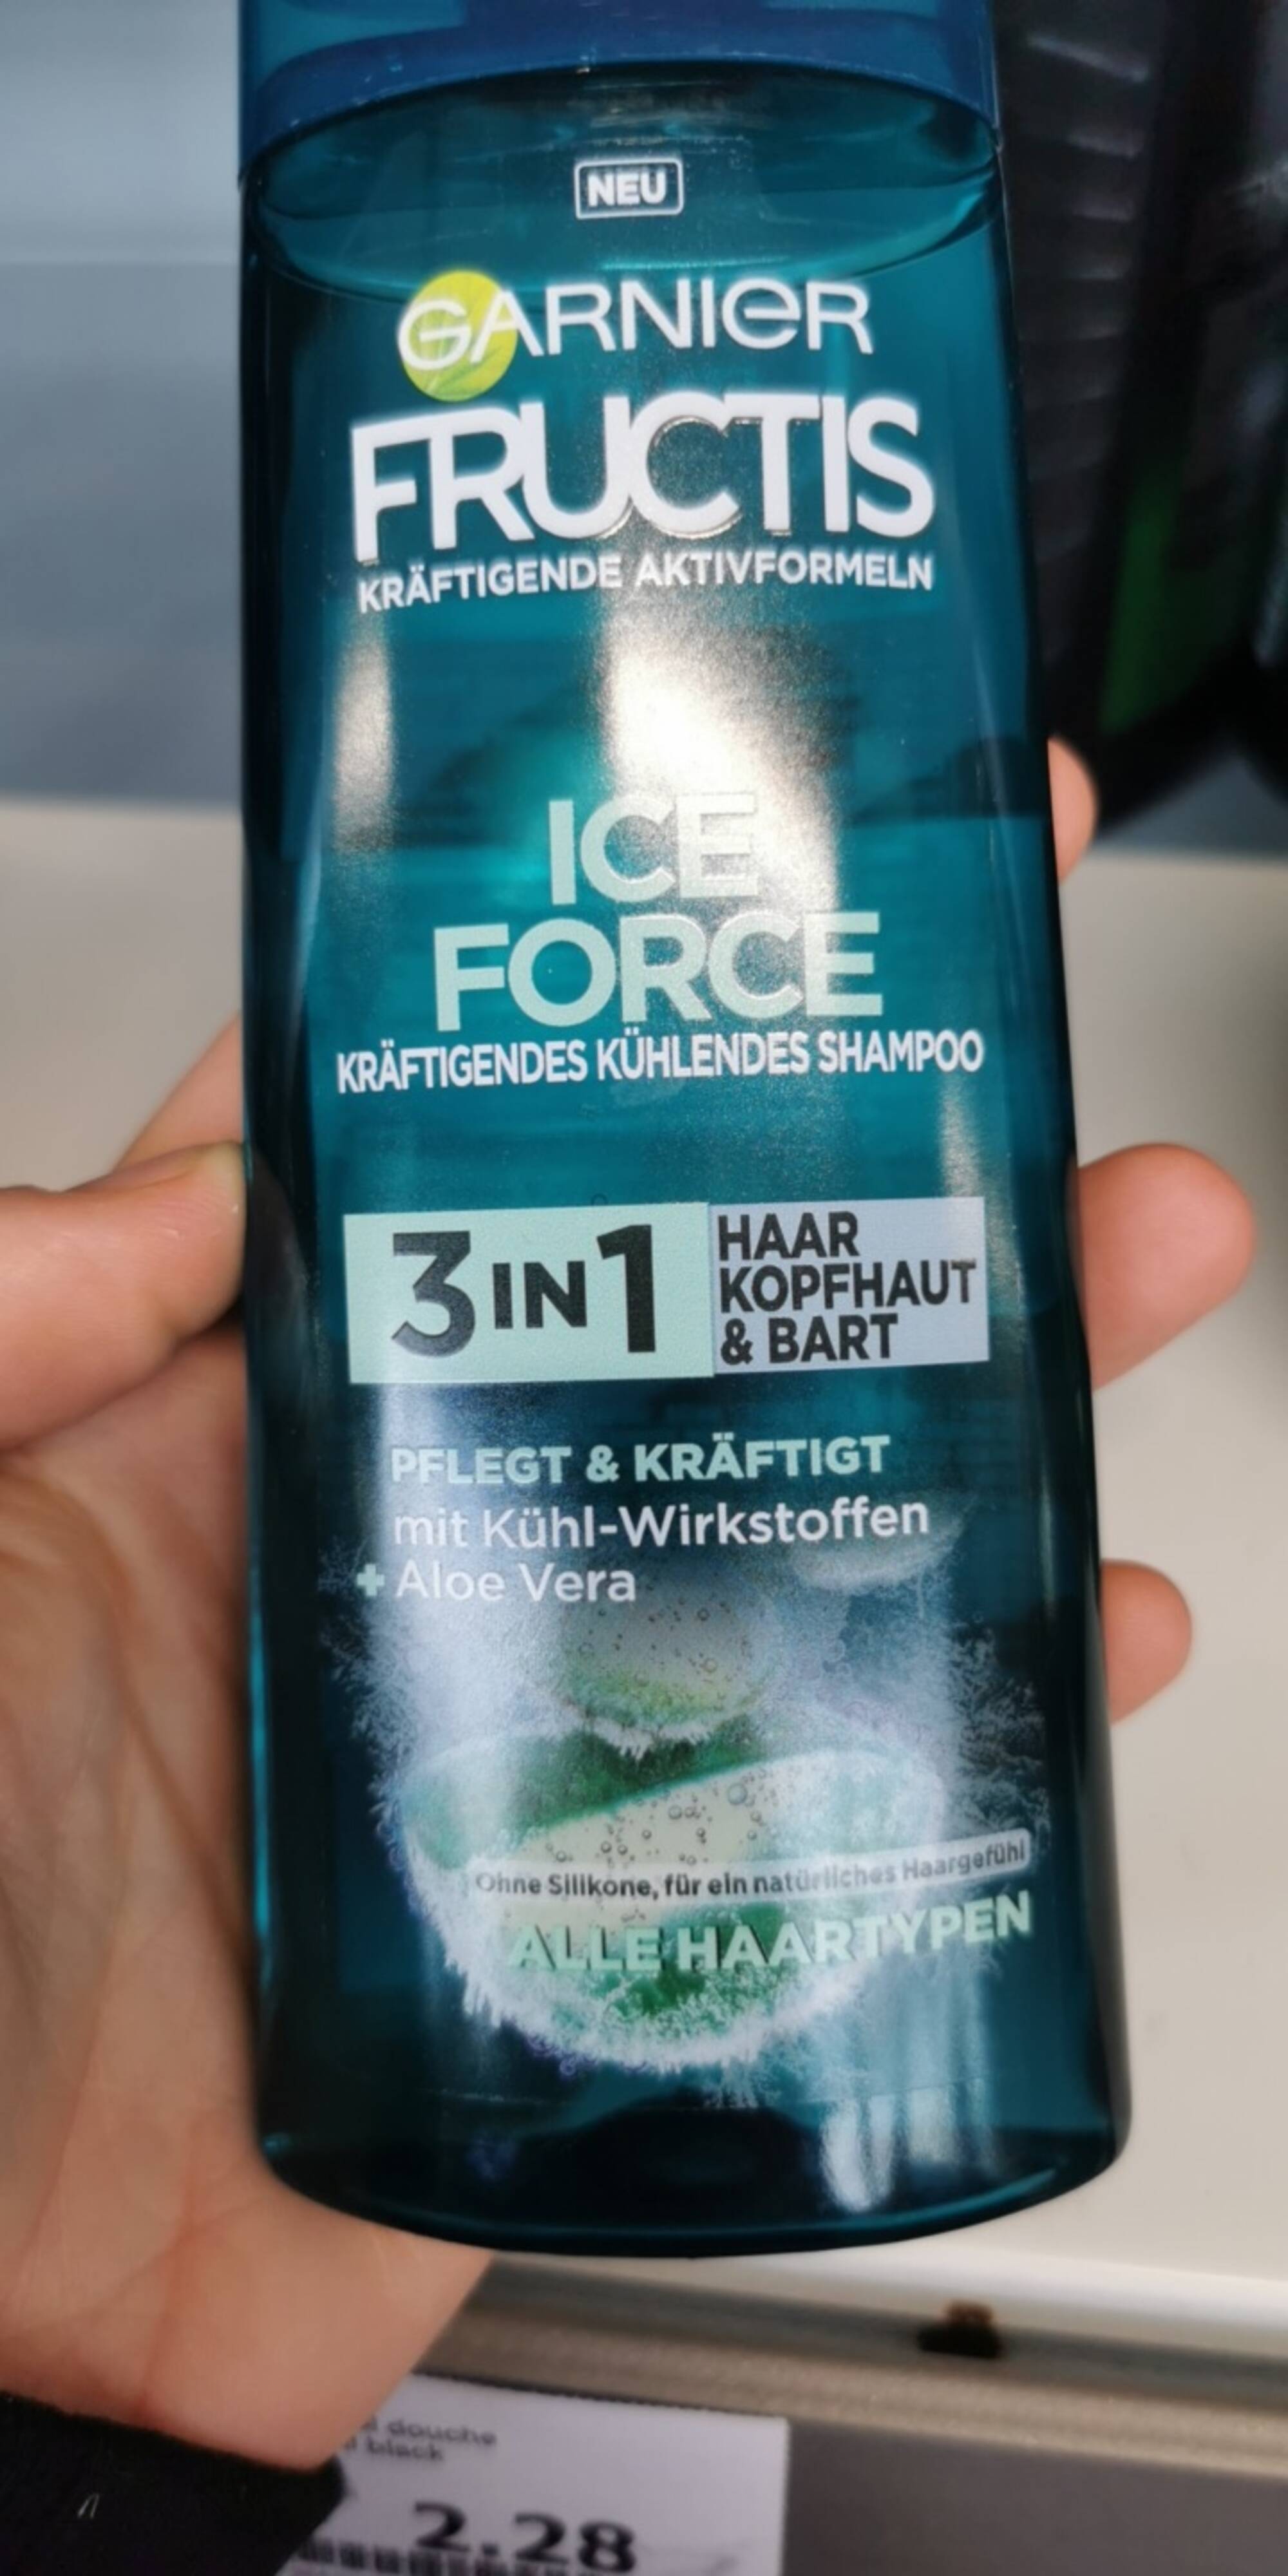 GARNIER - Fructis - Ice force kräftigendes kühlendes shampoo 3 in 1